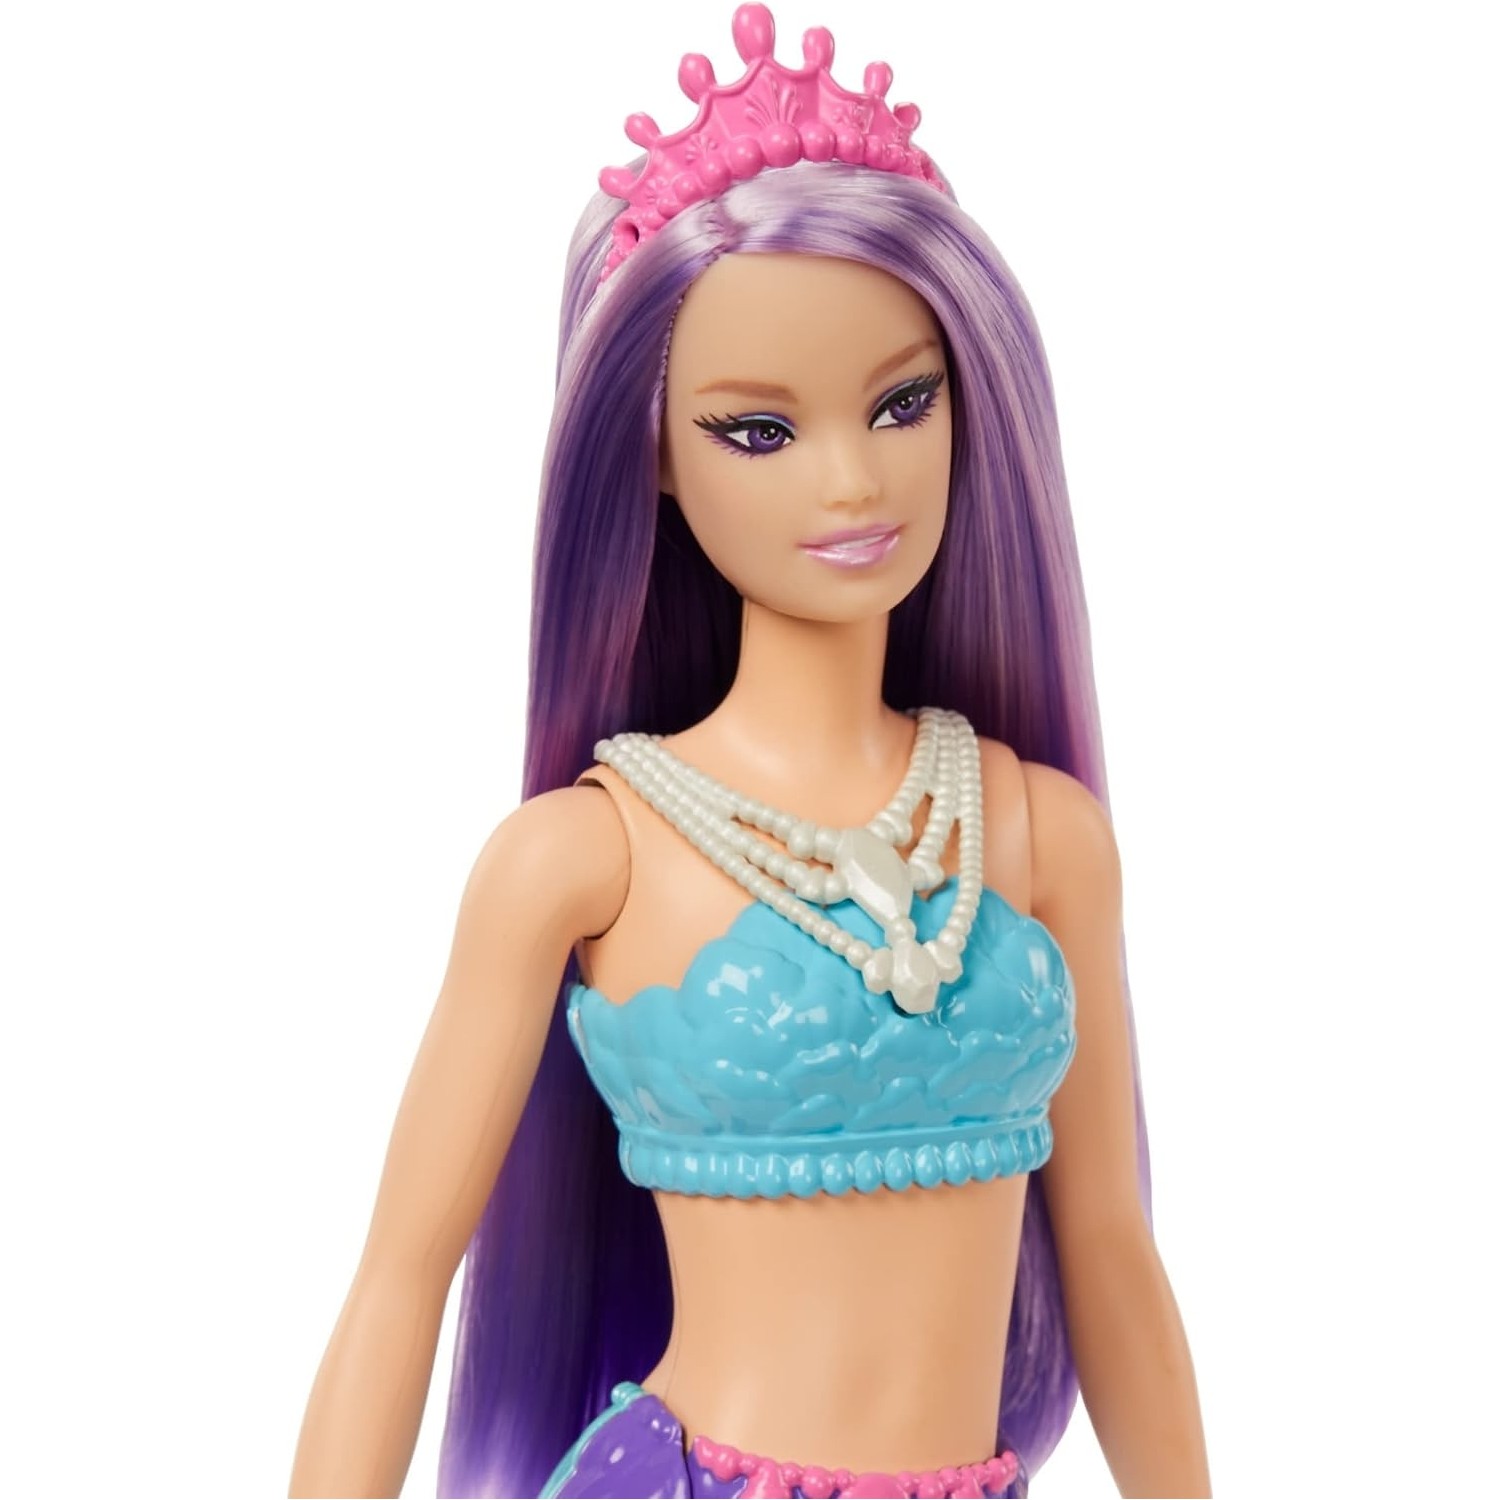 Кукла Barbie Dreamtopia Новые куклы русалки HGR10 куклы barbie русалки dreamtopia hgr09